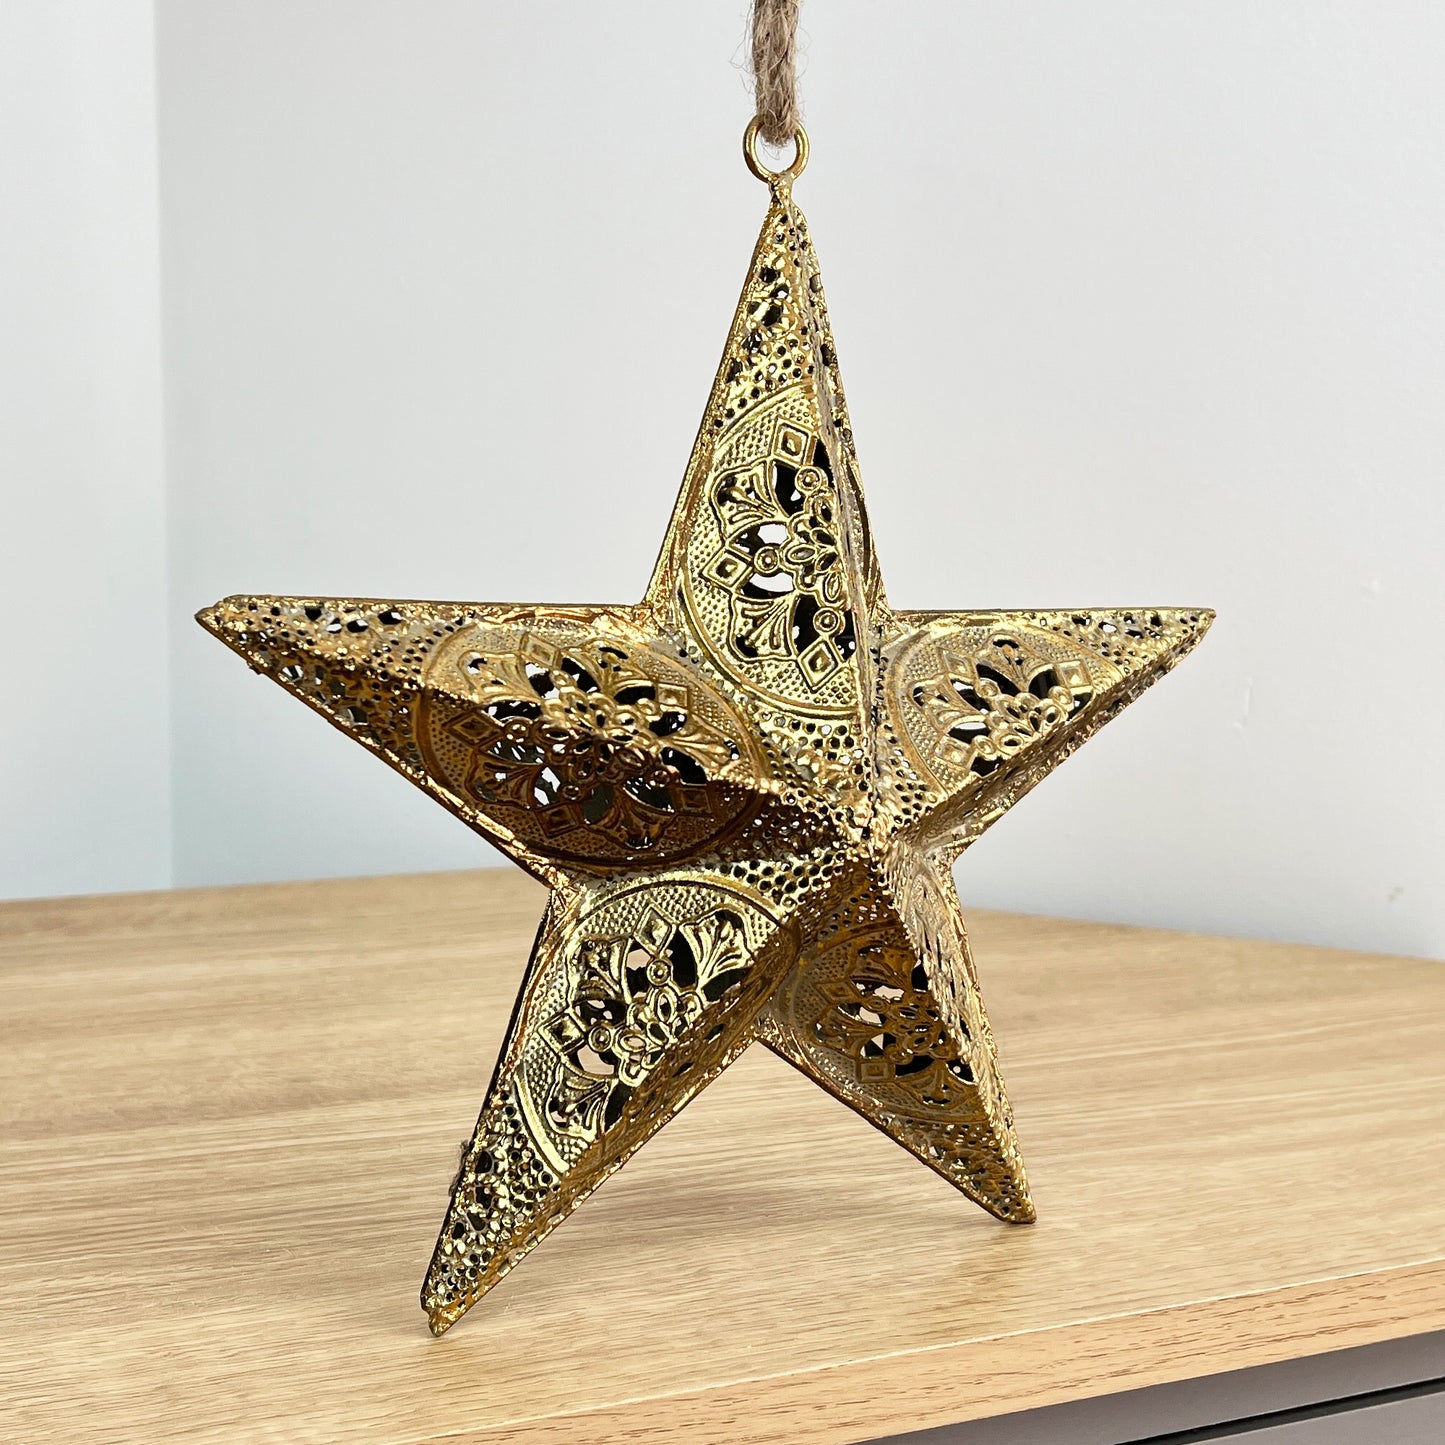 9" Vintage Hanging Star Decoration - Gold